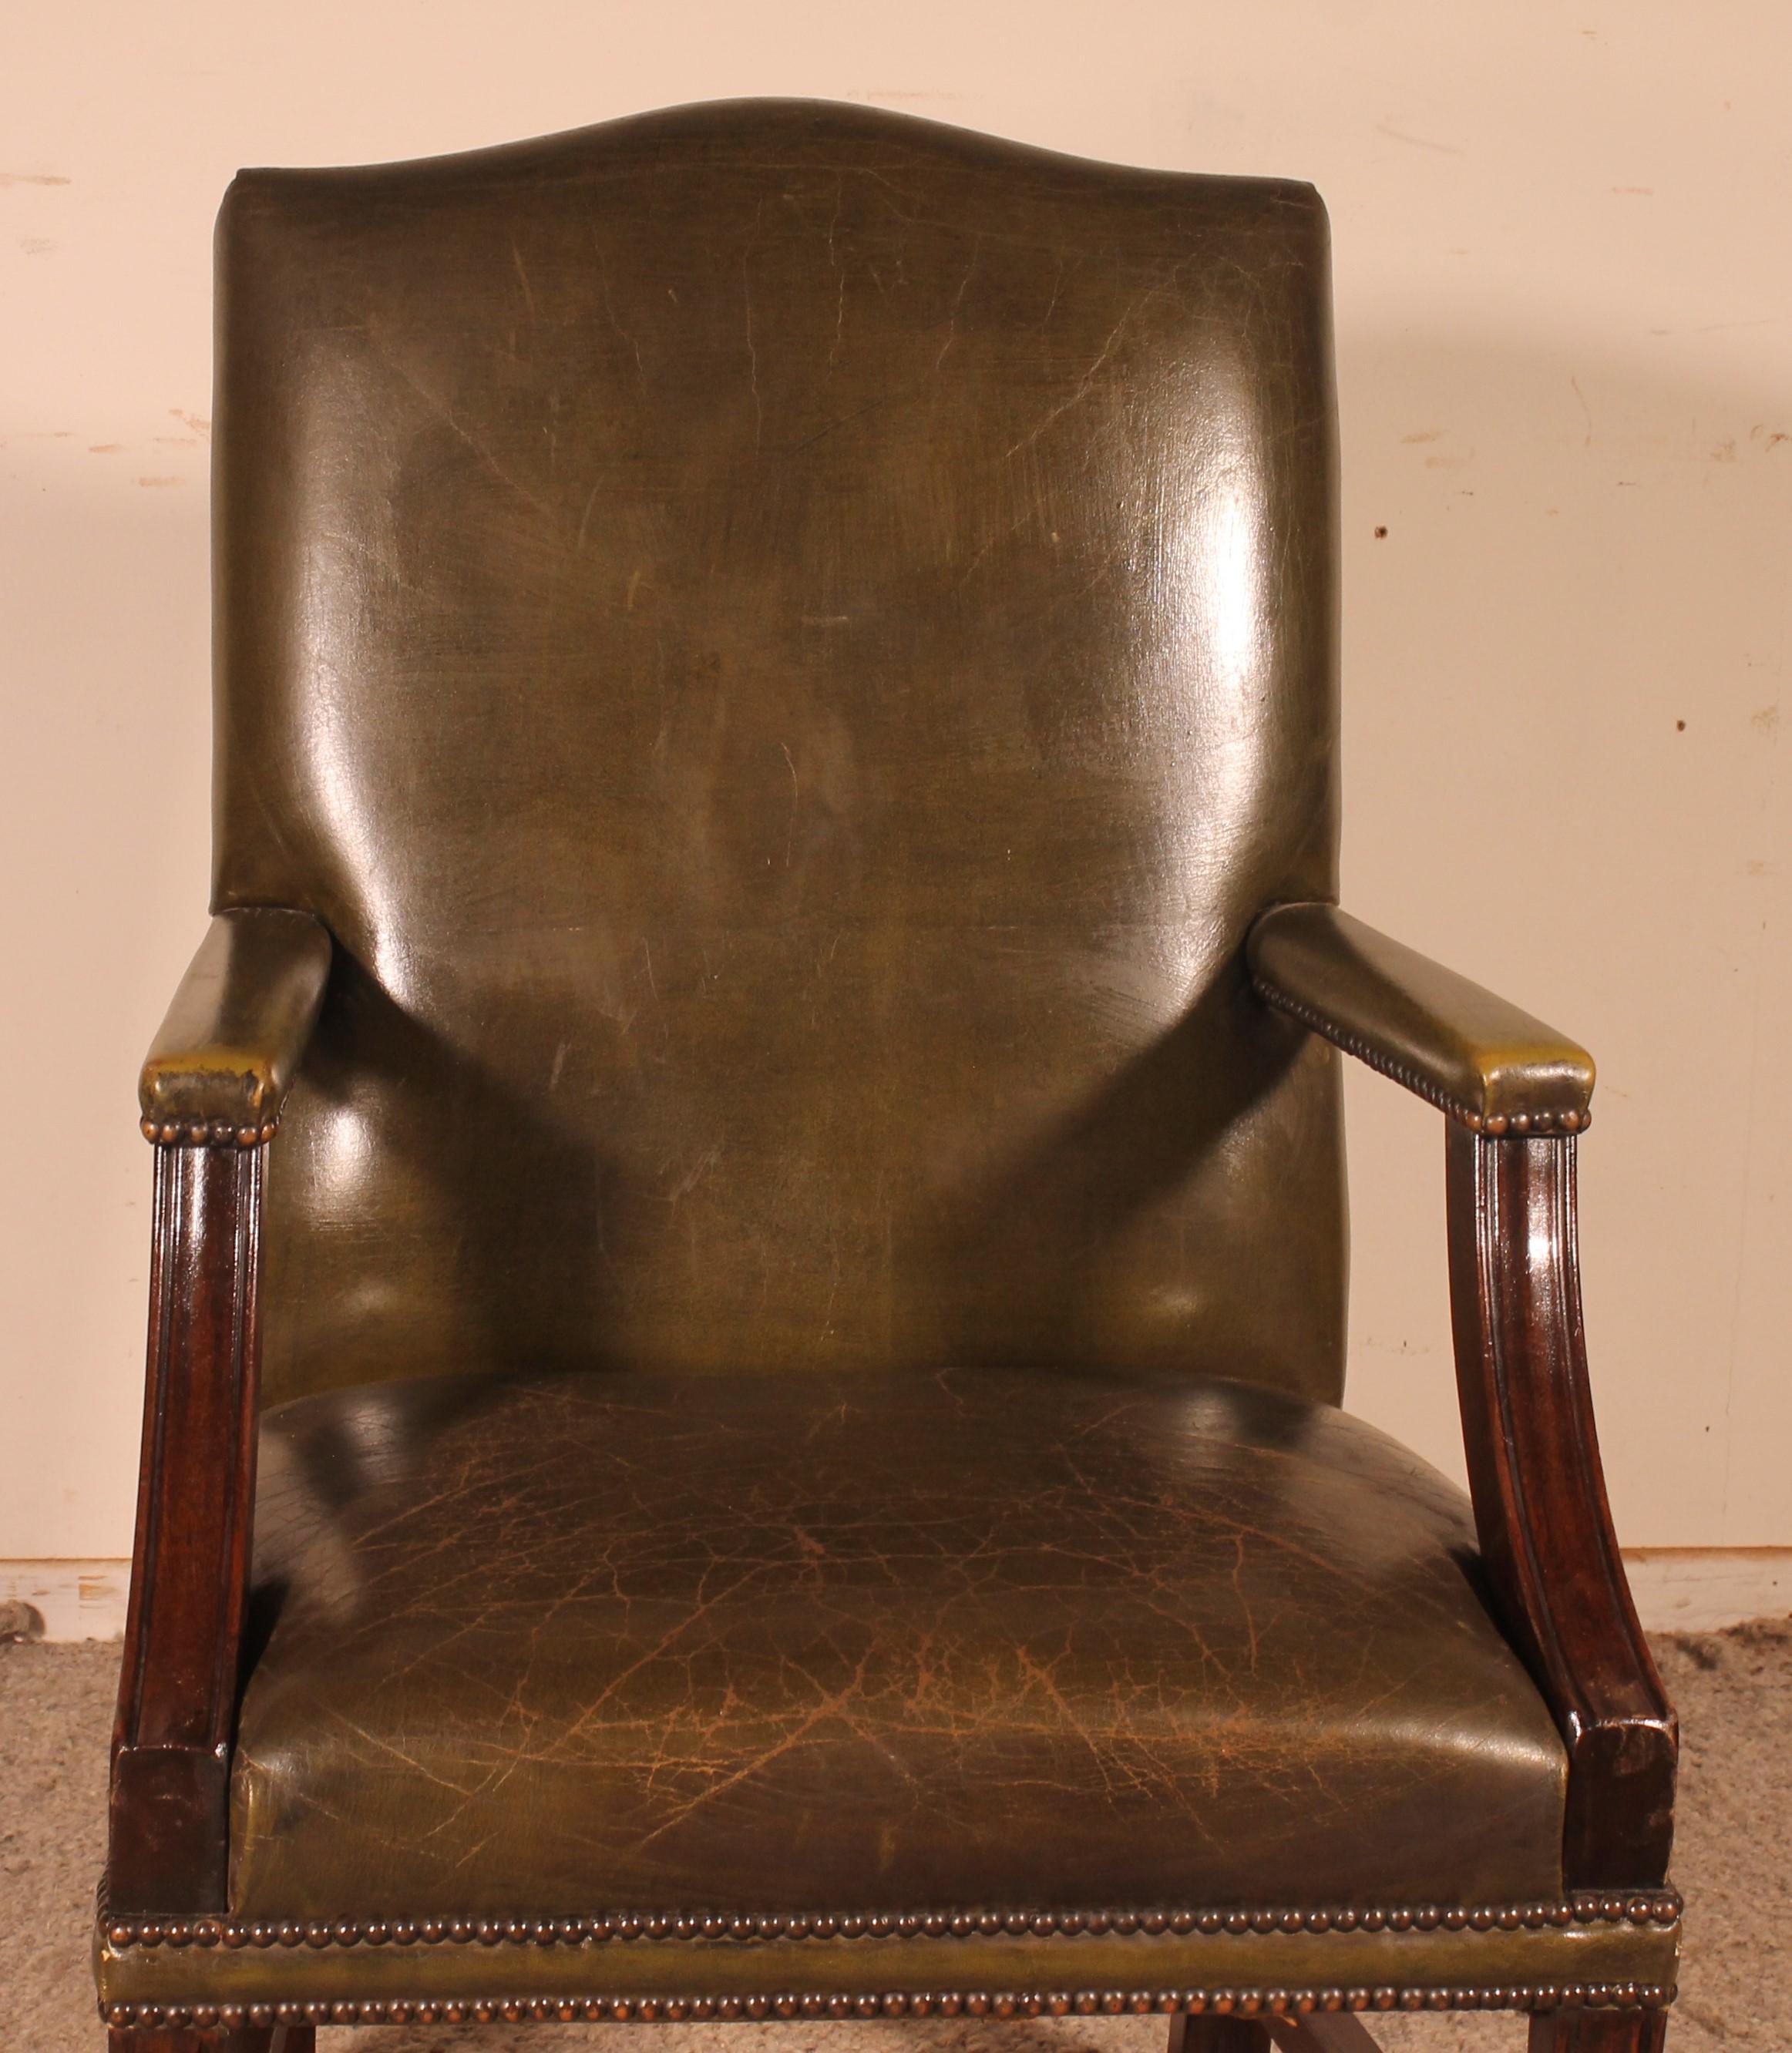 Très beau fauteuil anglais en cuir avec une base en acajou

Très beau fauteuil recouvert de cuir vert qui a une très belle patine.
Le fauteuil repose sur une base en acajou massif.
Très confortable.
Elle peut être utilisée comme chaise longue ou